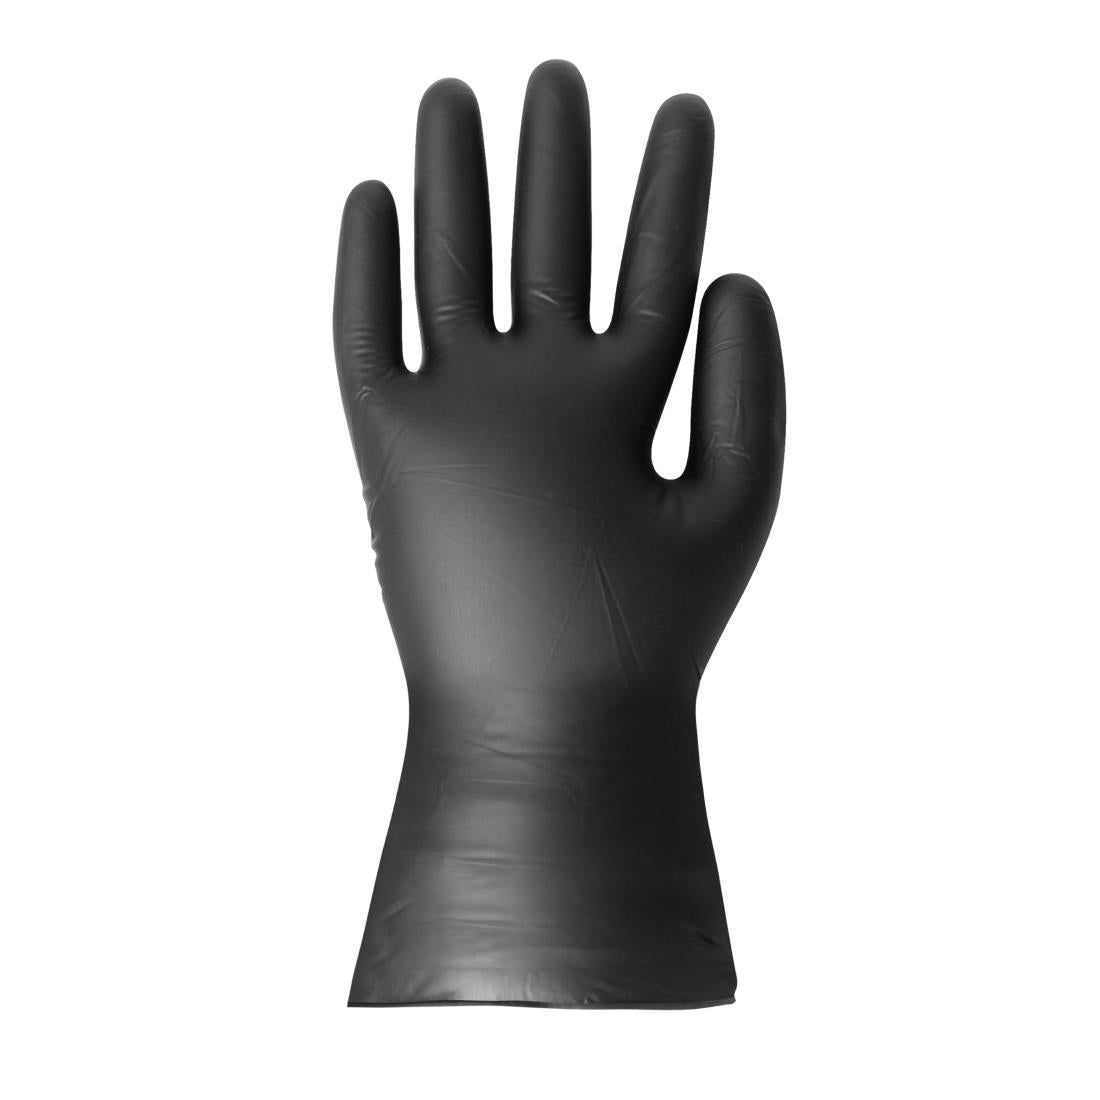 FJ748-L Hygiplas Vinyl Black Powder Free Glove L - pack 100 JD Catering Equipment Solutions Ltd